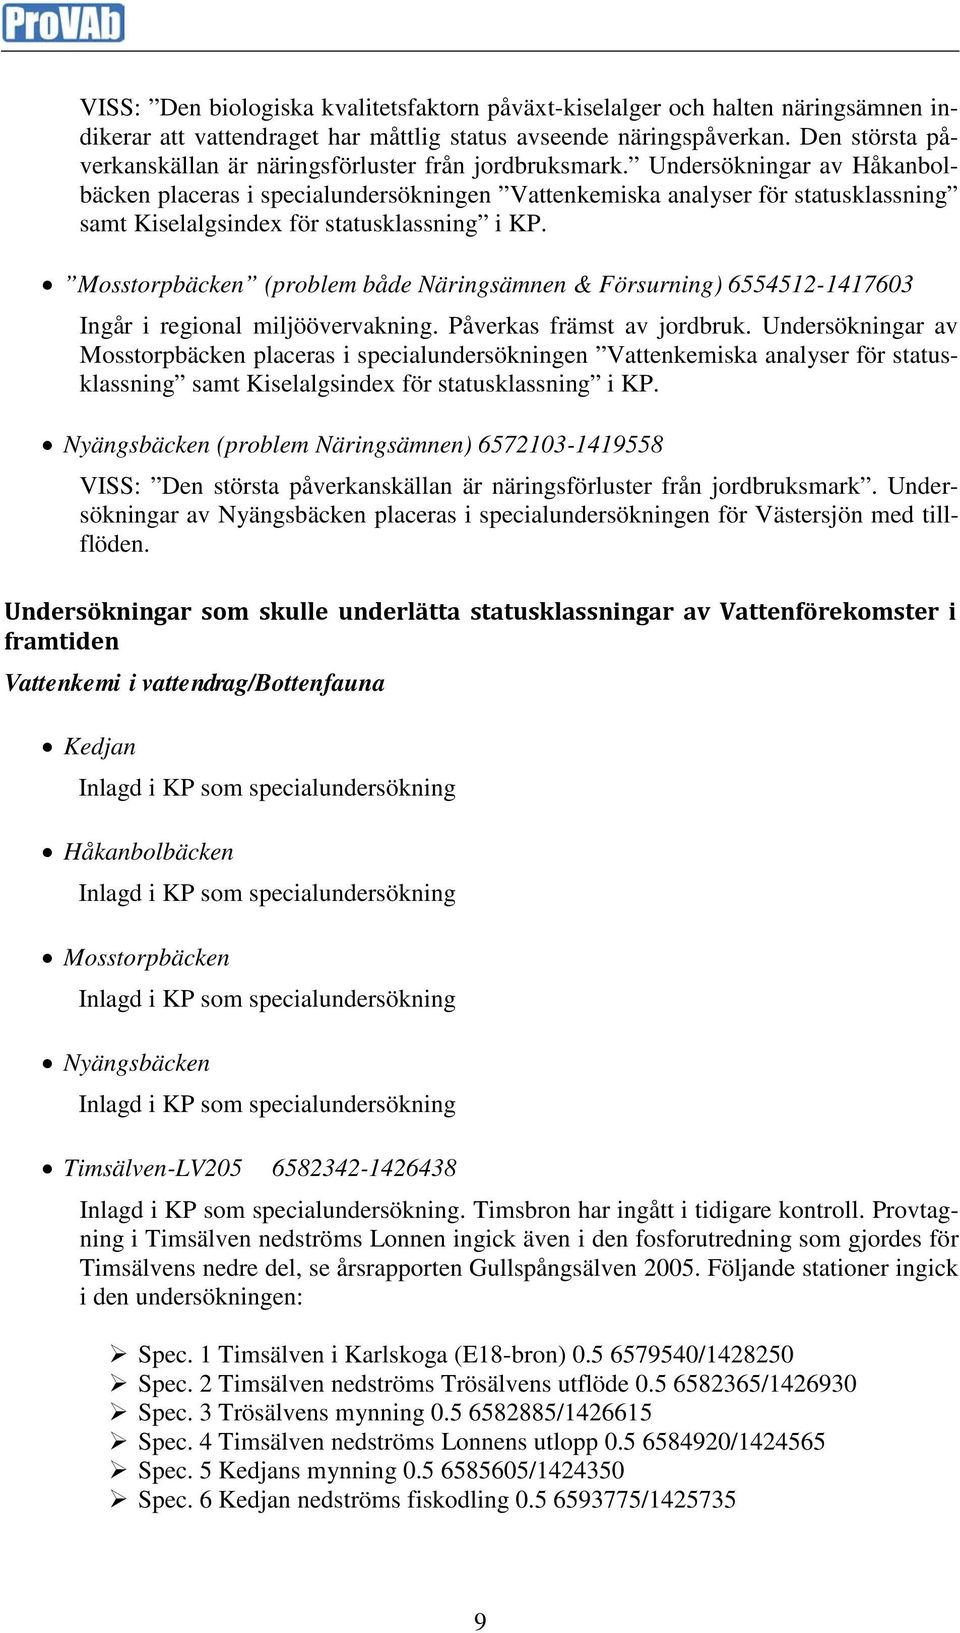 Undersökningar av Håkanbolbäcken placeras i specialundersökningen Vattenkemiska analyser för statusklassning samt Kiselalgsindex för statusklassning i KP.